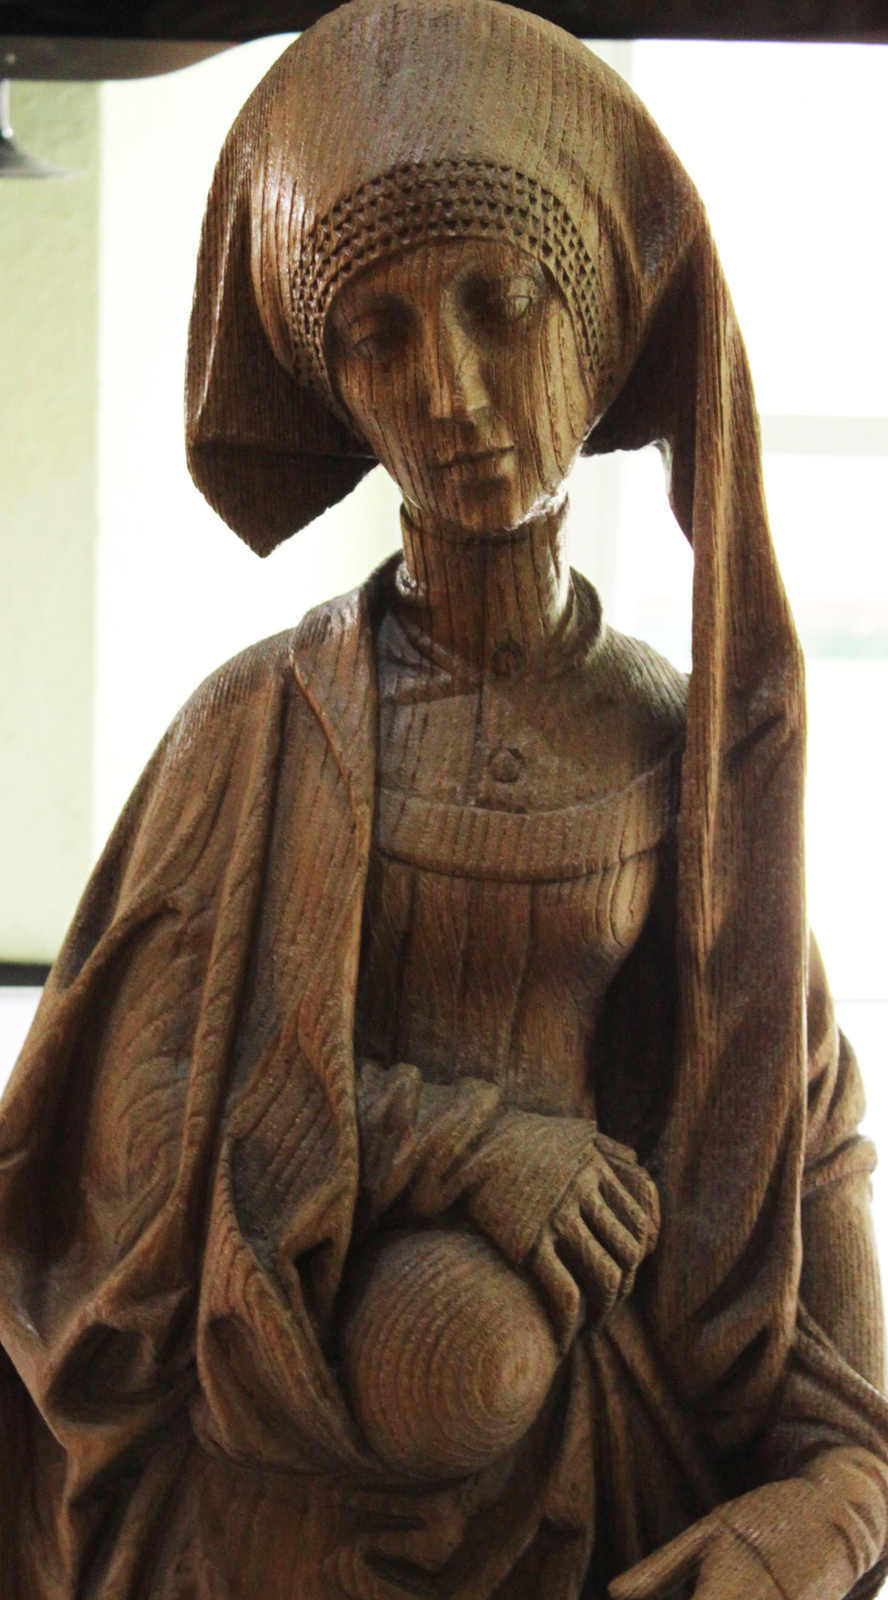 Holzfigur aus Eichenholz, Höhe ca, 83 cm, "Dame mit Gefäß"Mindestpreis: 100 EUR - Image 2 of 2